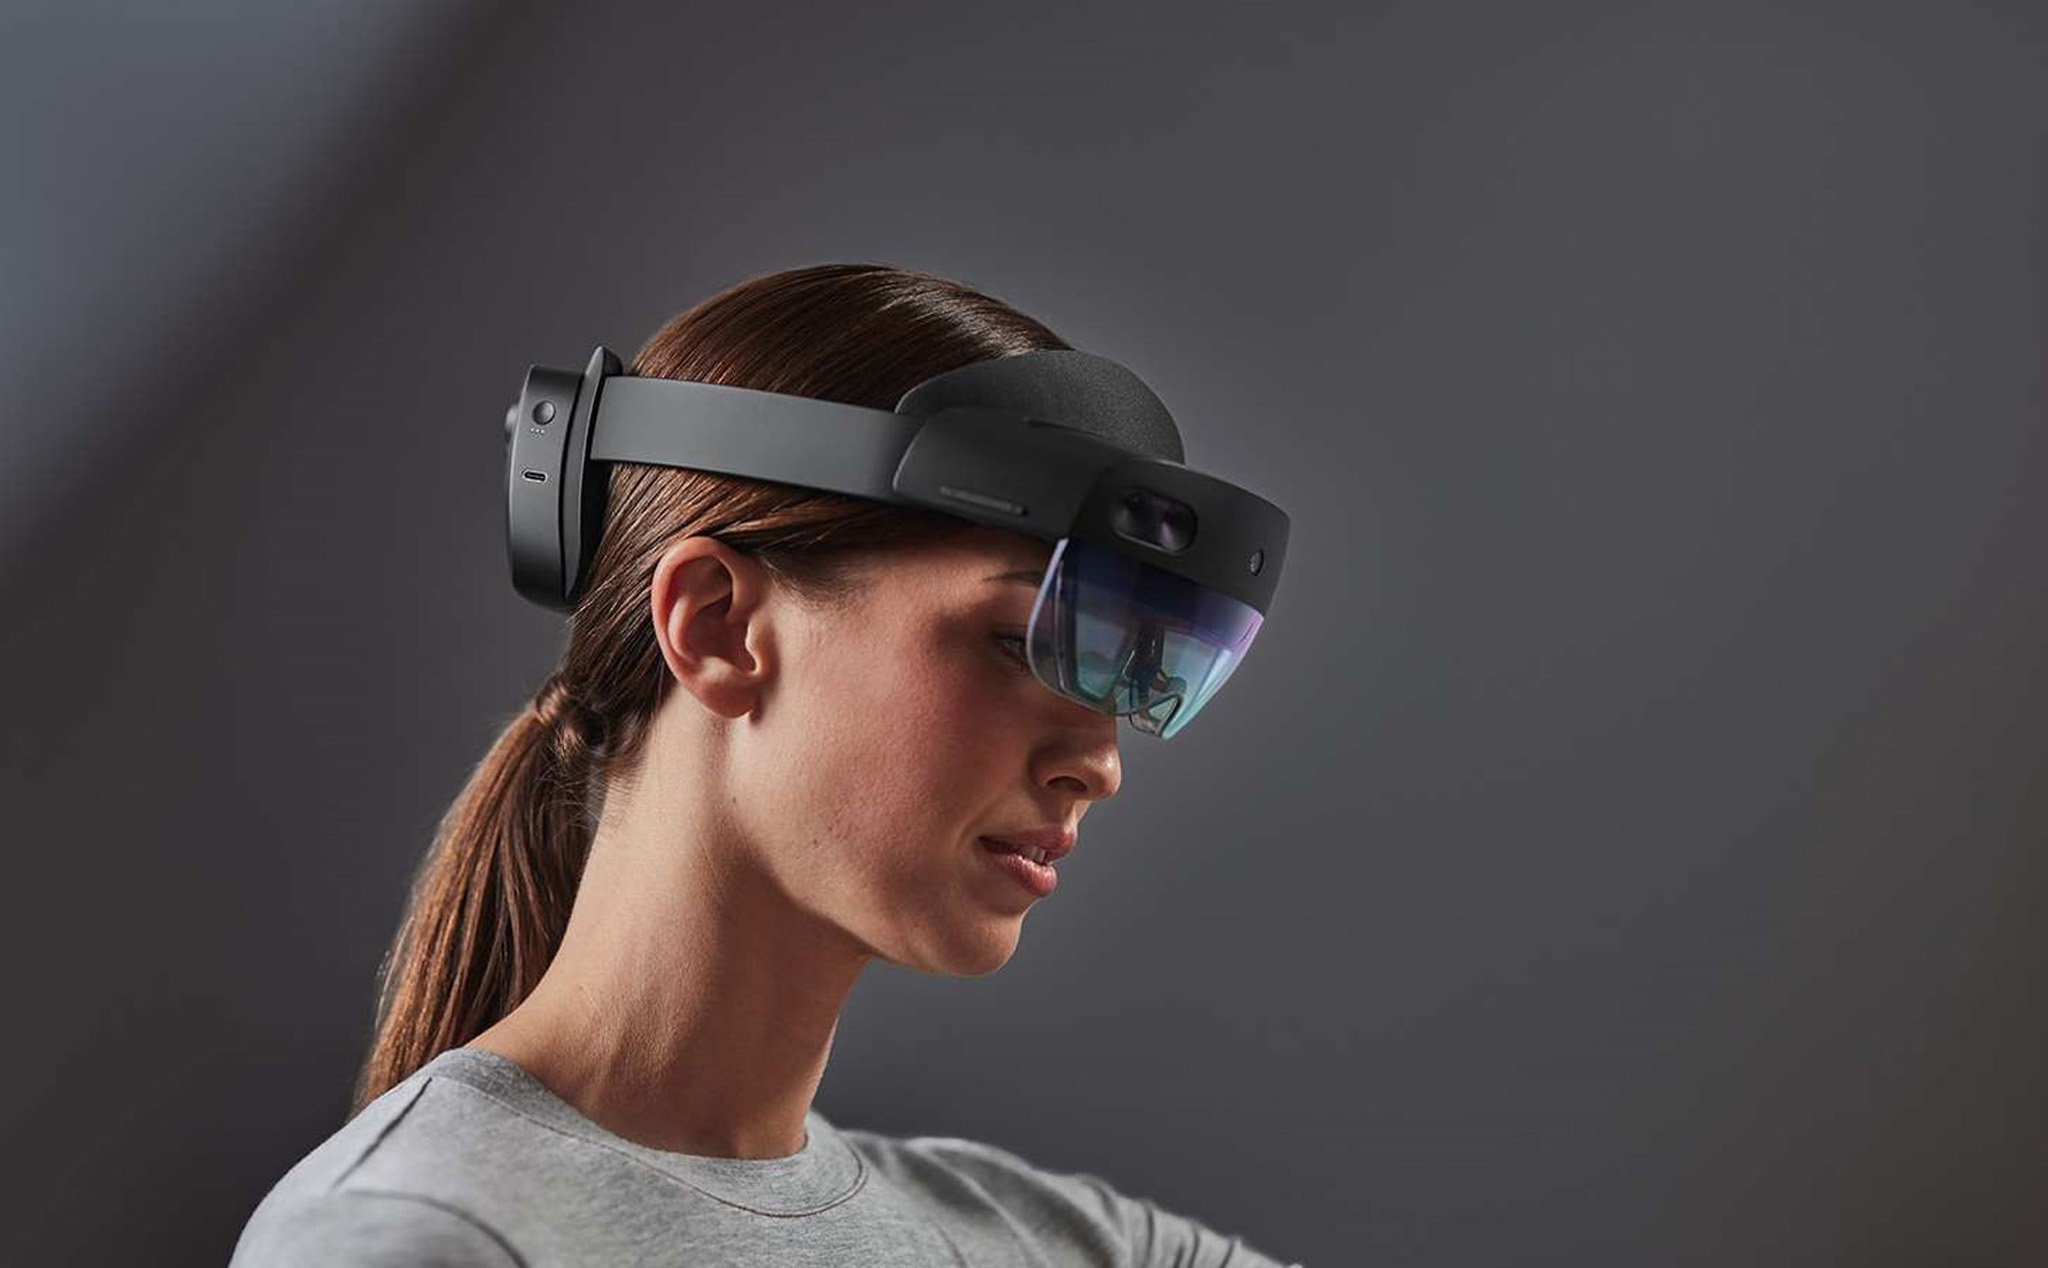 Bloomberg: Kính VR của Apple sẽ ra mắt khoảng 2022 - 2023, trang bị chip khỏe hơn cả M1